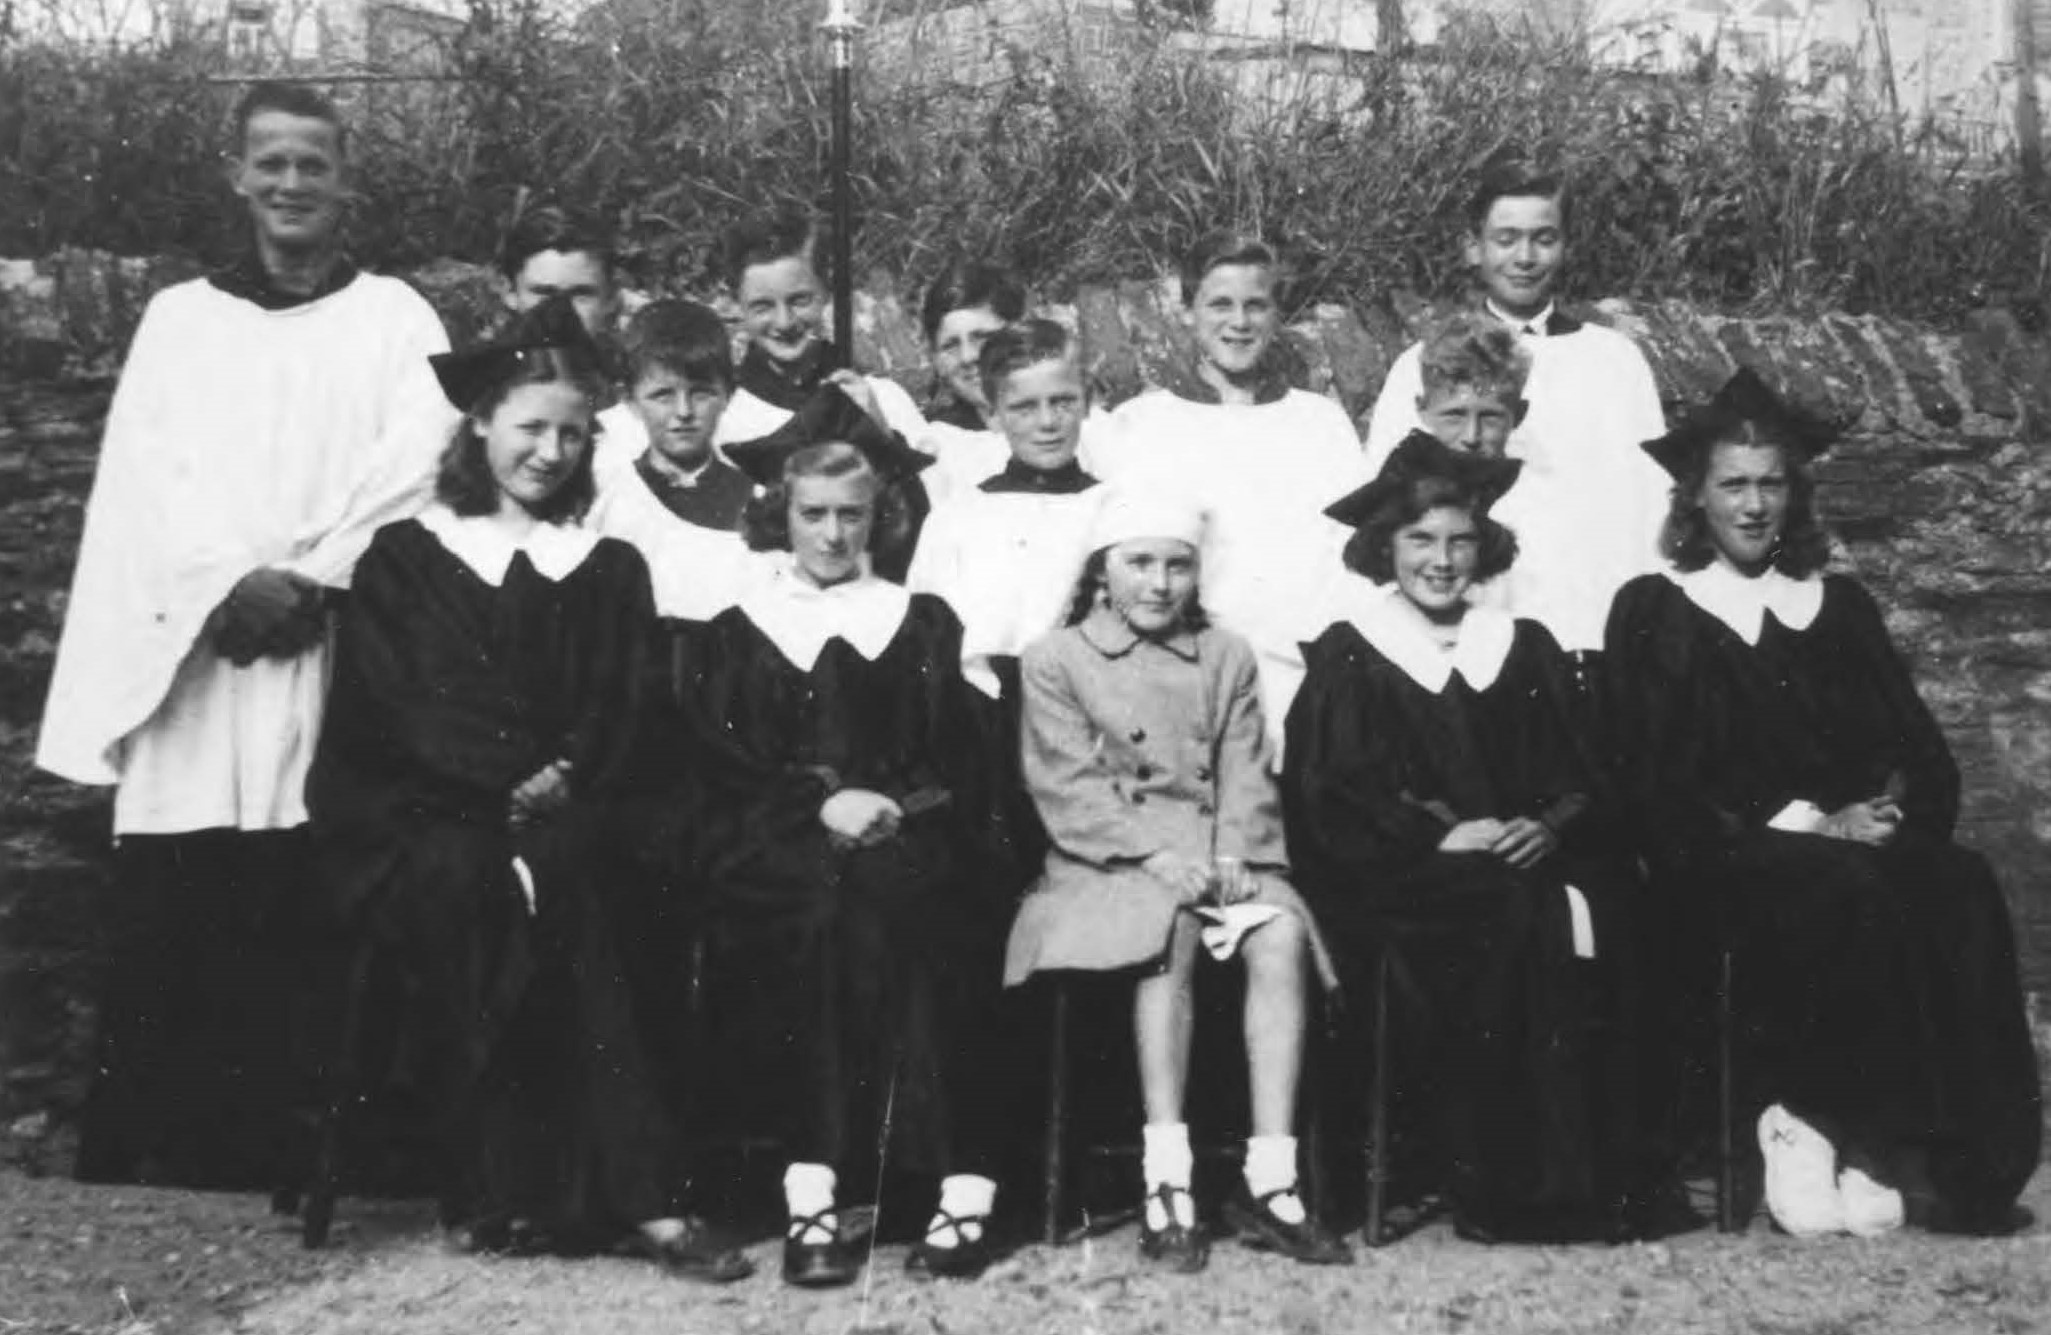 St Peter's Church Choir, 1951